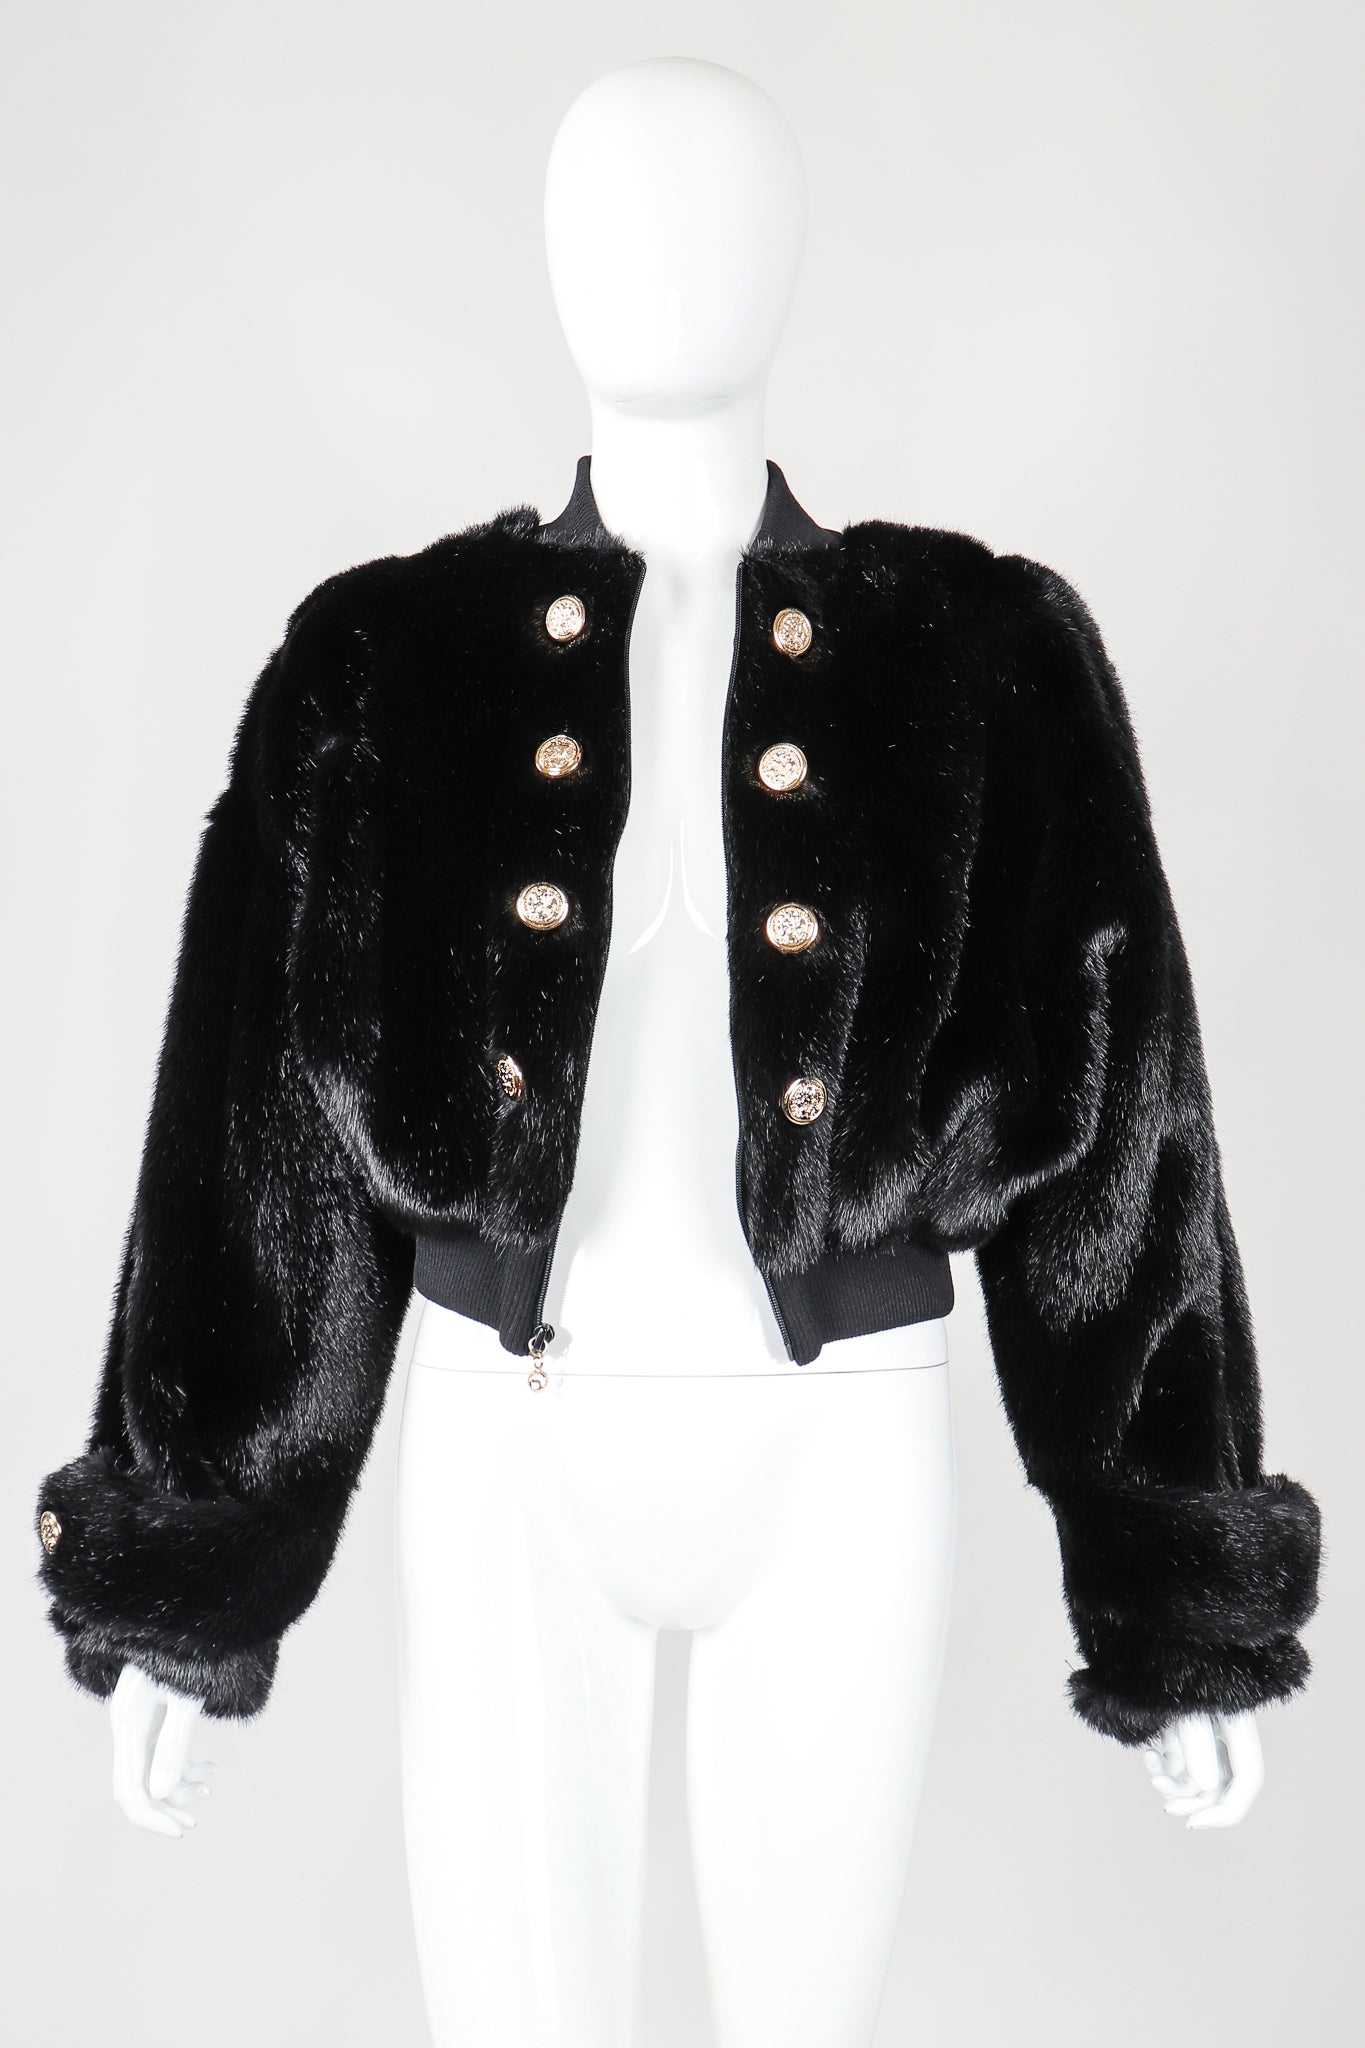 Recess Vintage St. John black faux fur bomber jacket on mannnequin, unbuttoned